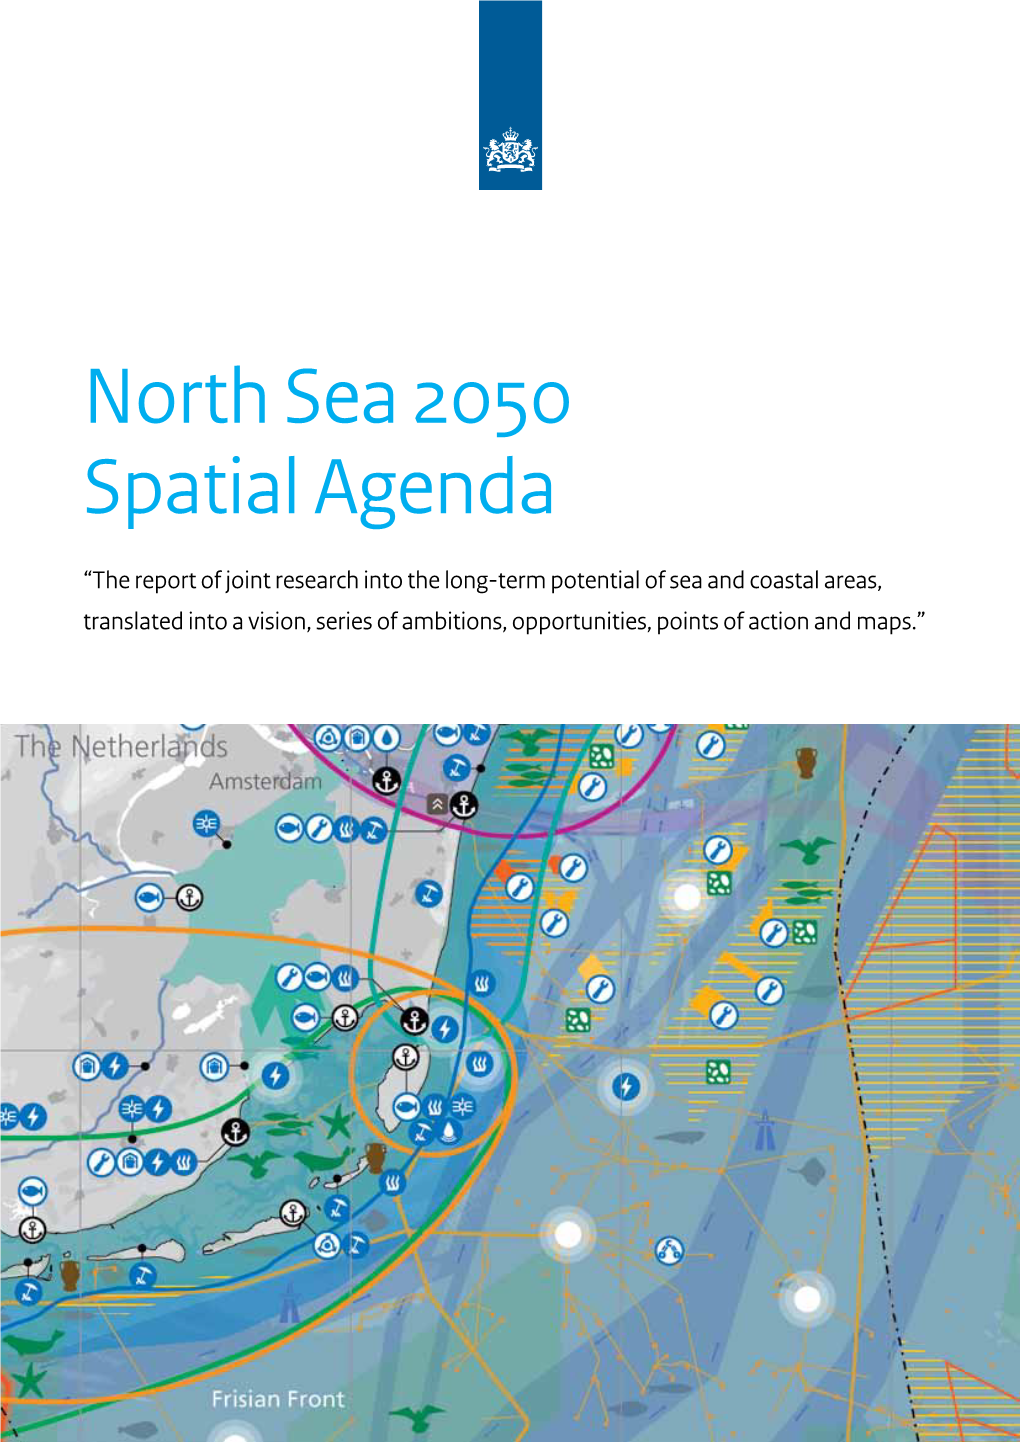 North Sea 2050 Spatial Agenda